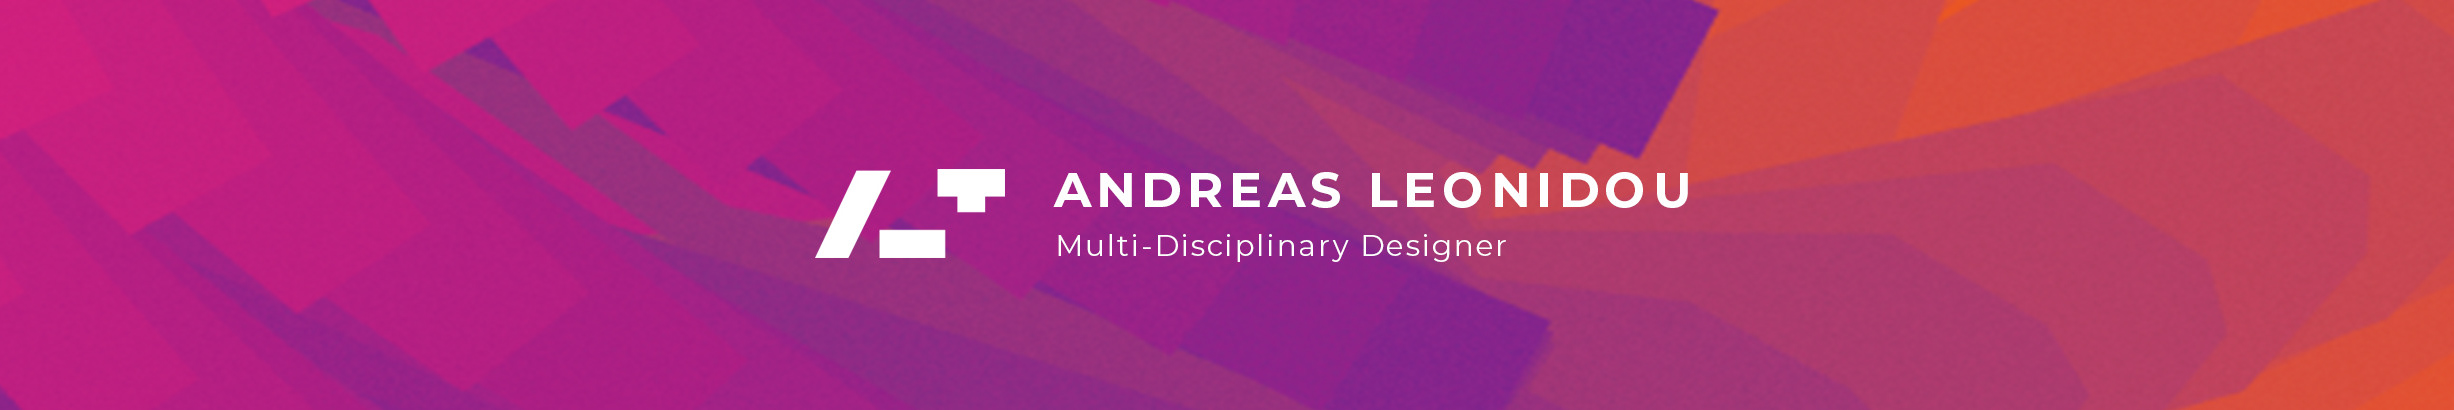 Andreas Leonidou's profile banner